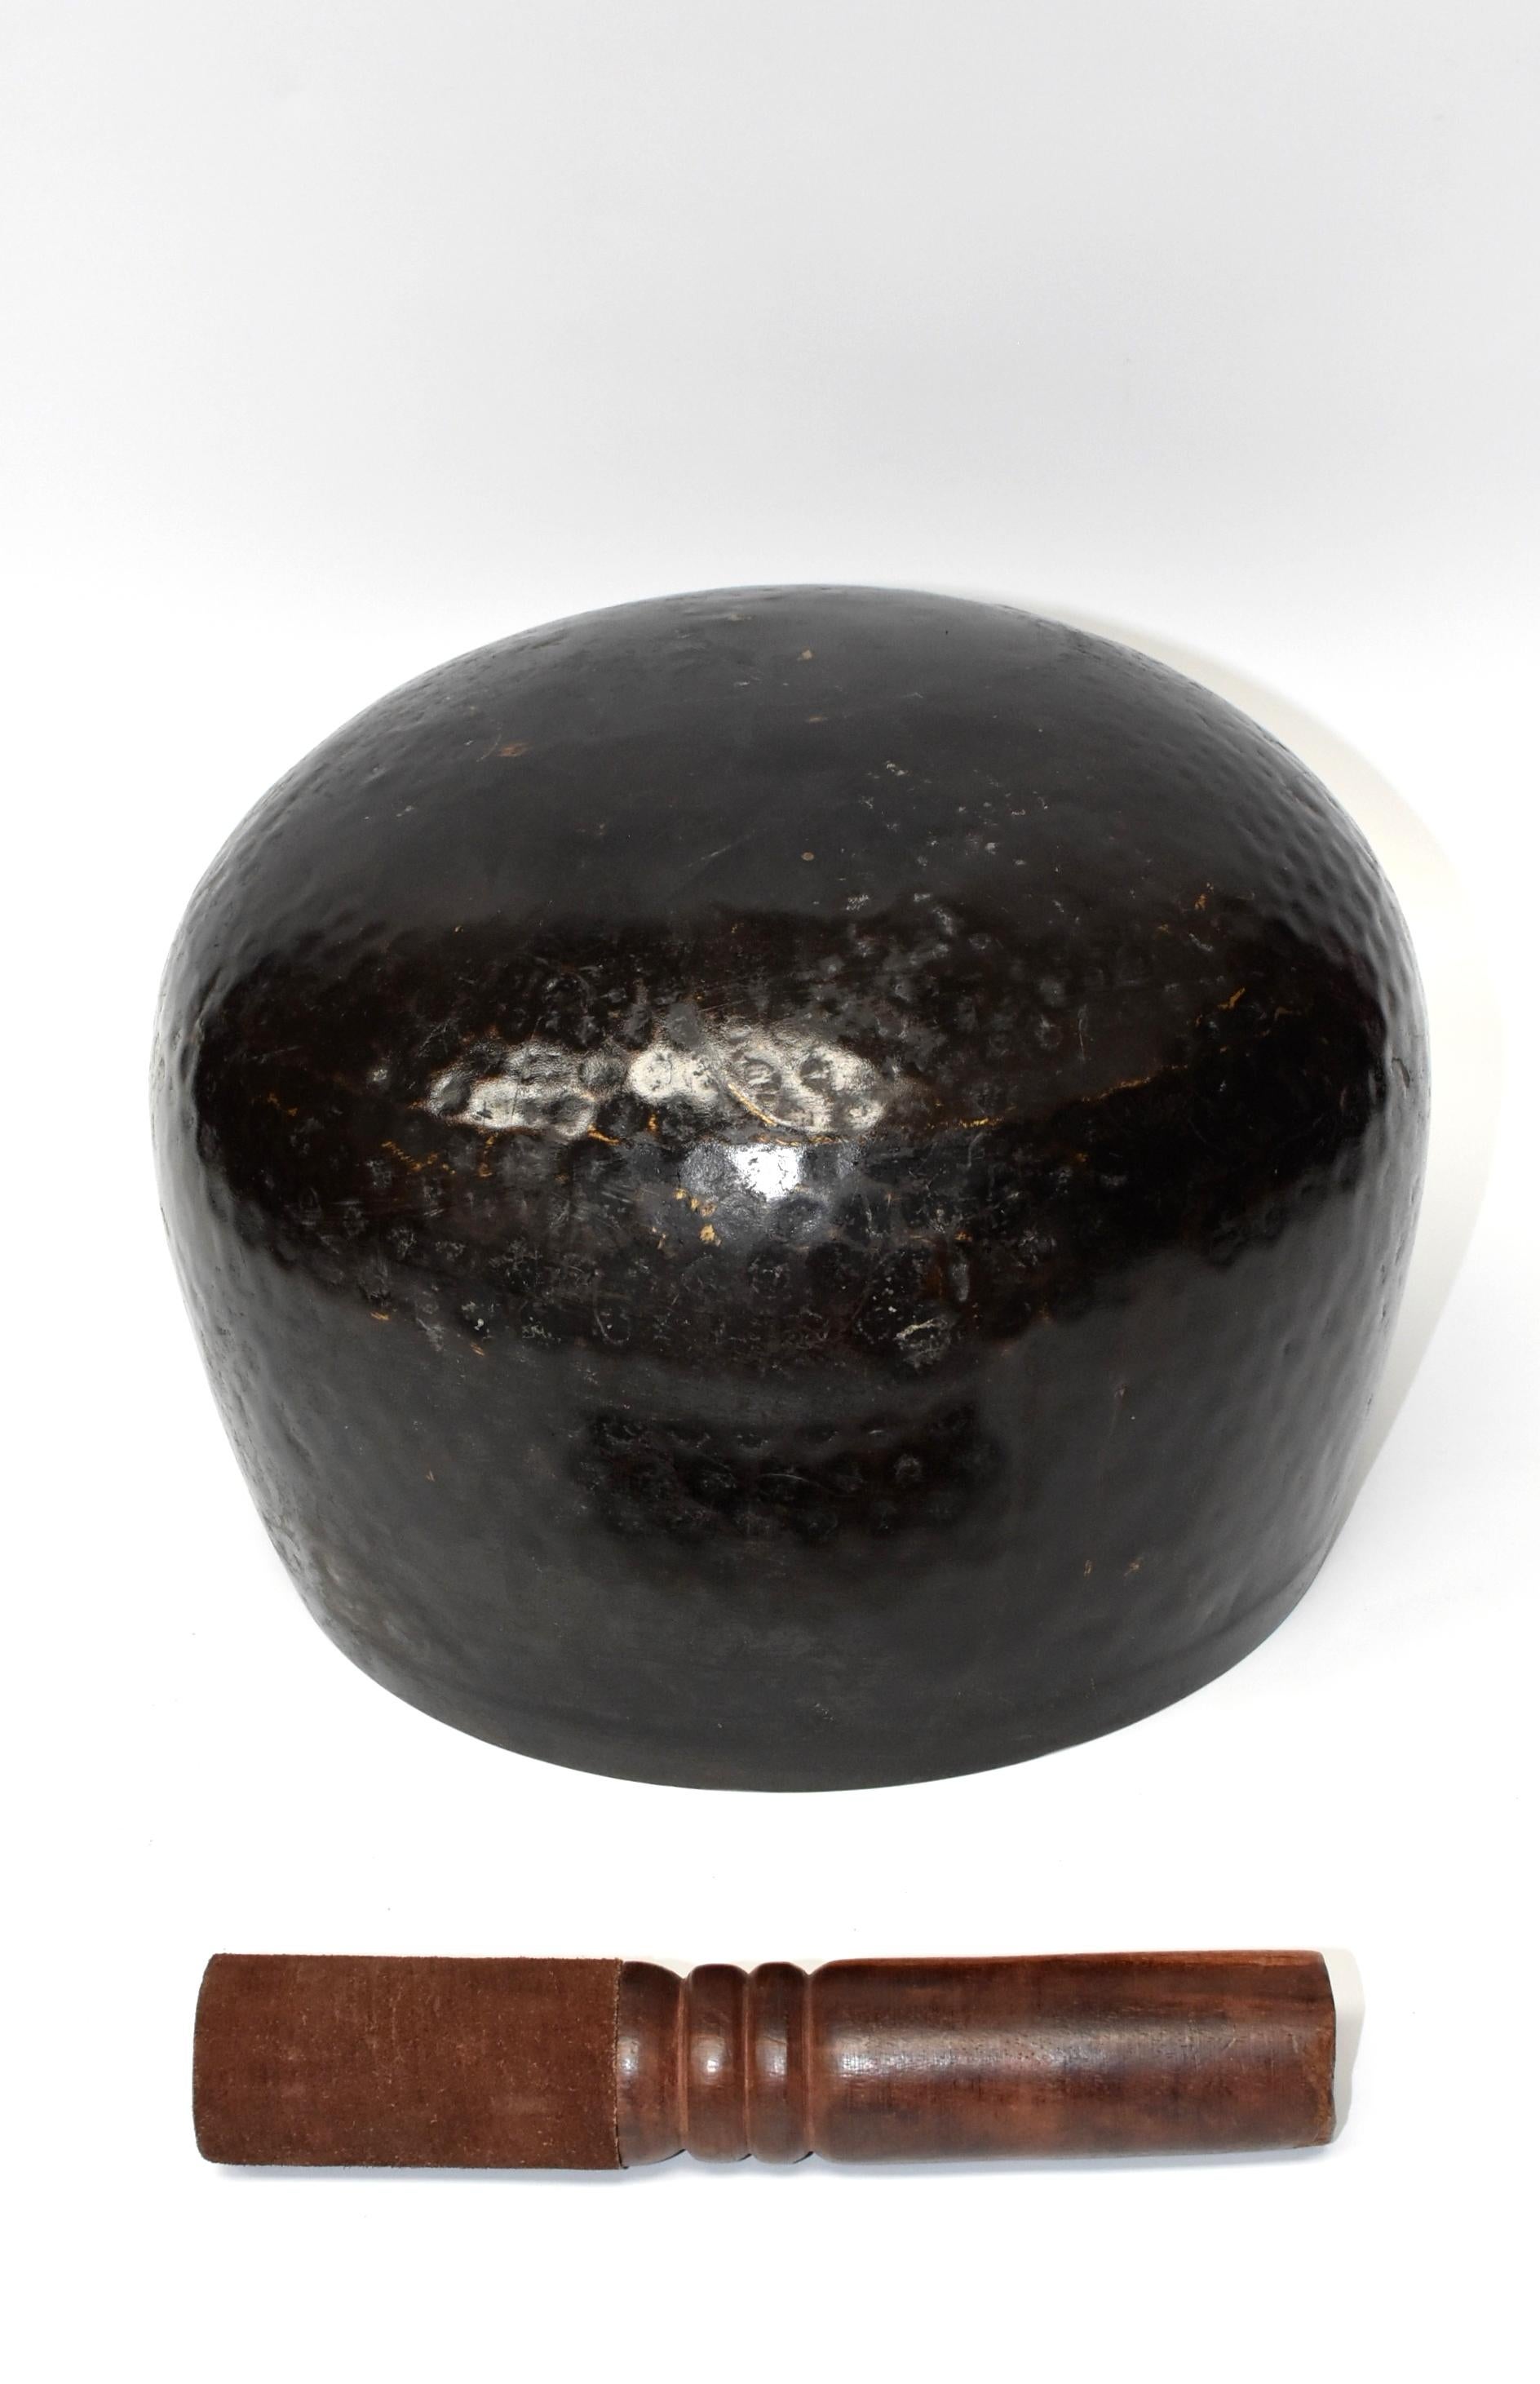 Large Japanese Antique Bronze Singing Bowl 1, Black, Hand Hammered 10